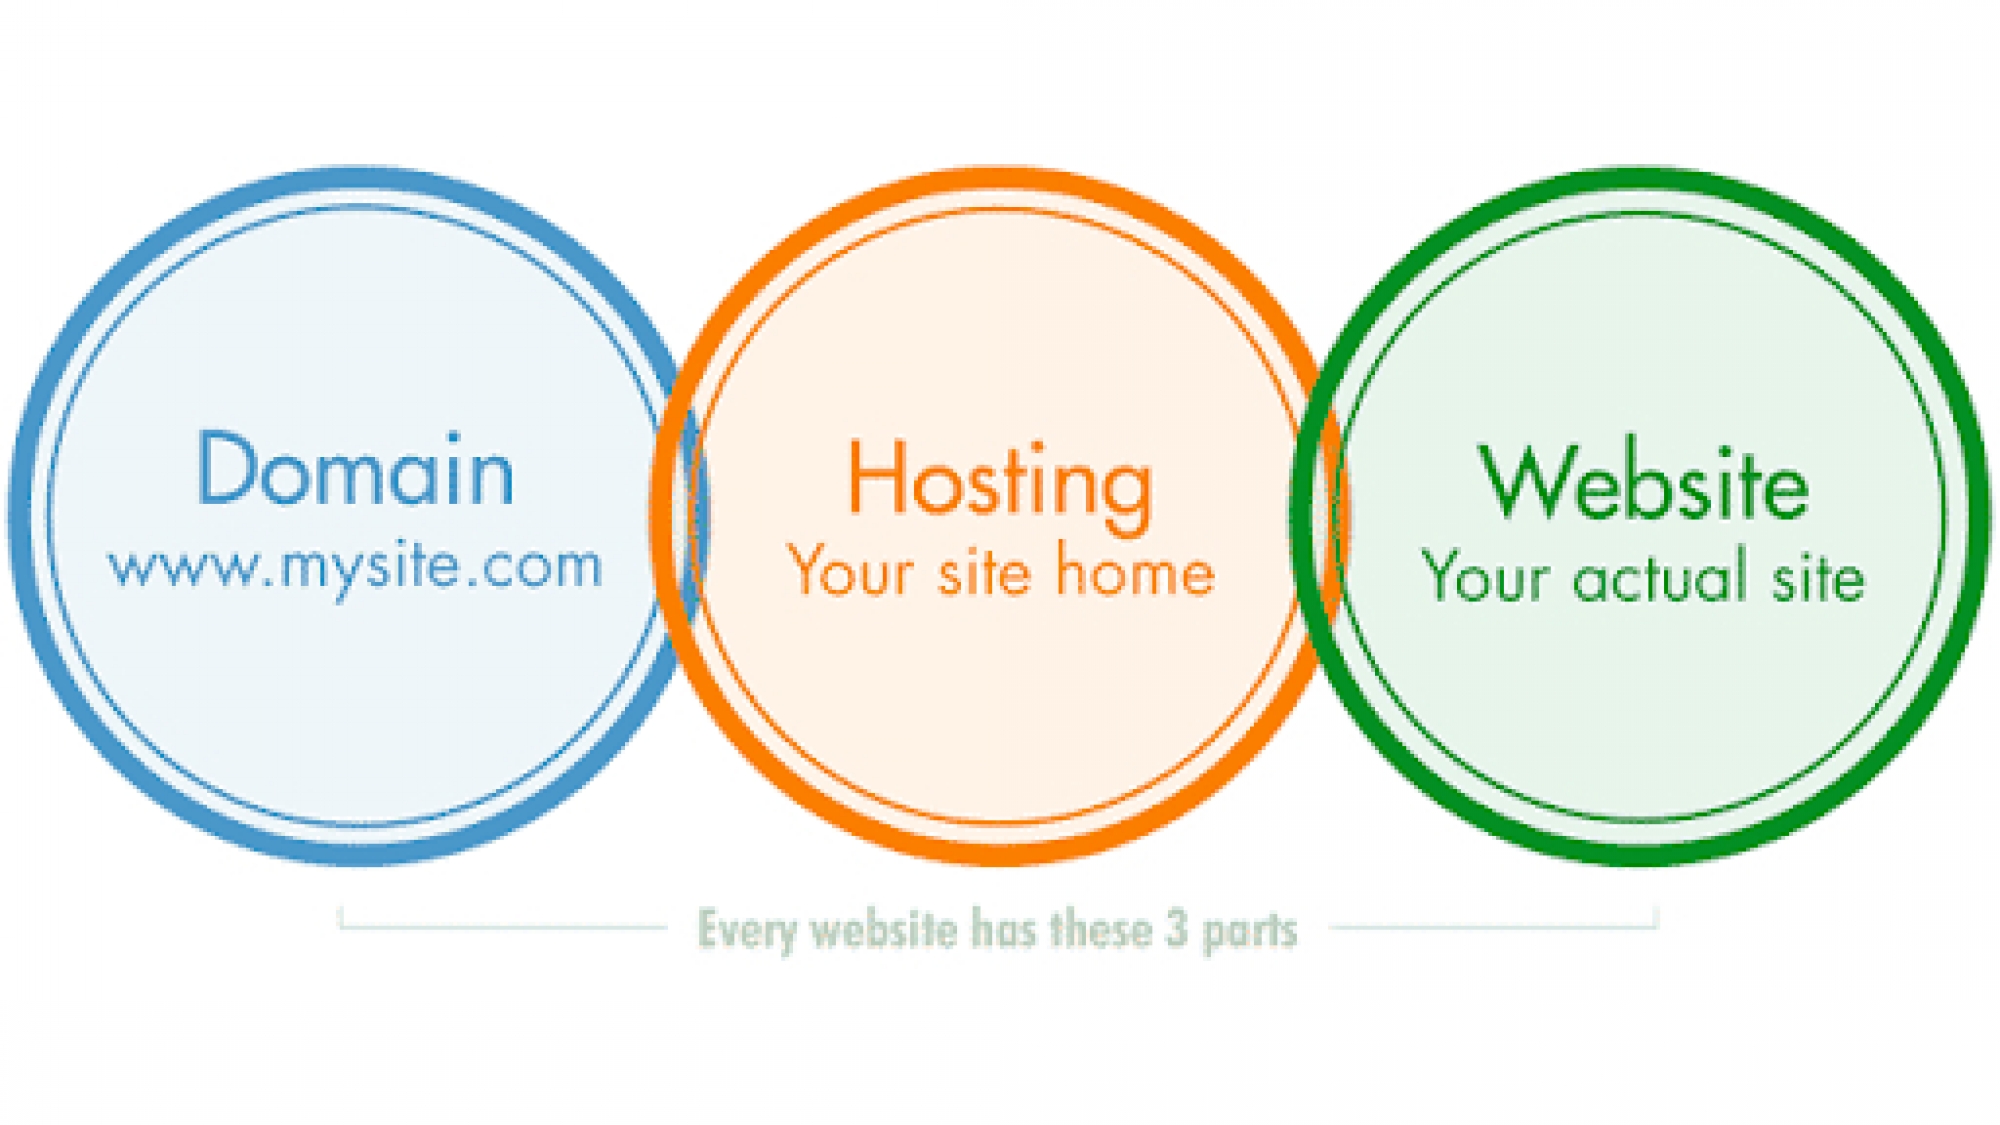 Domain-Hosting-Website